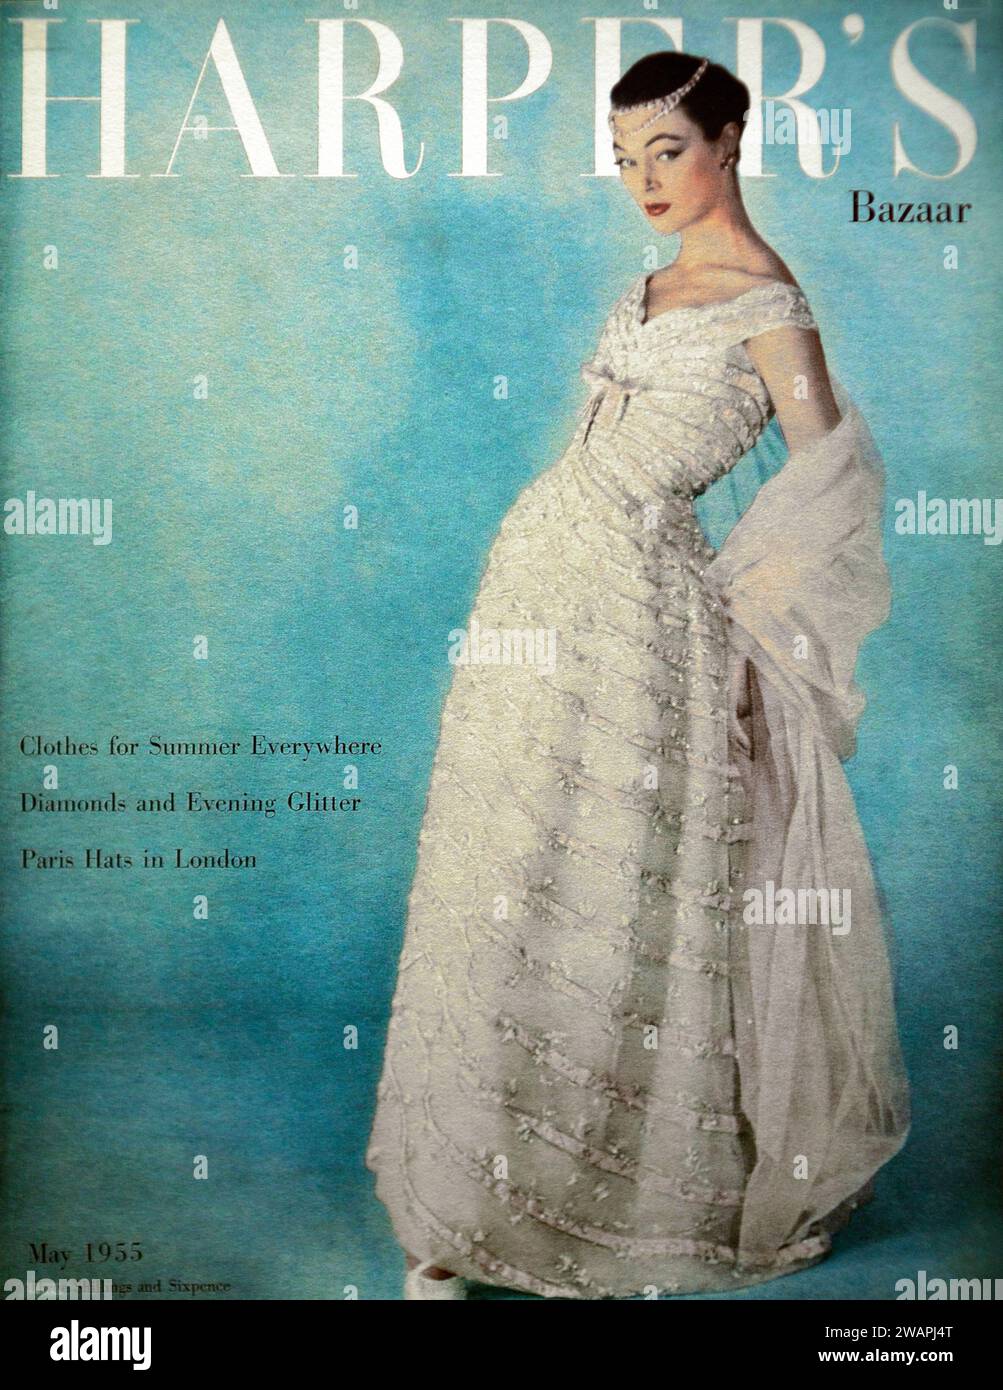 Harper's Bazaar, copertina maggio 1955 | in questa incantevole immagine, una donna trasuda grazia e raffinatezza indossando un abito bianco splendente. Foto Stock